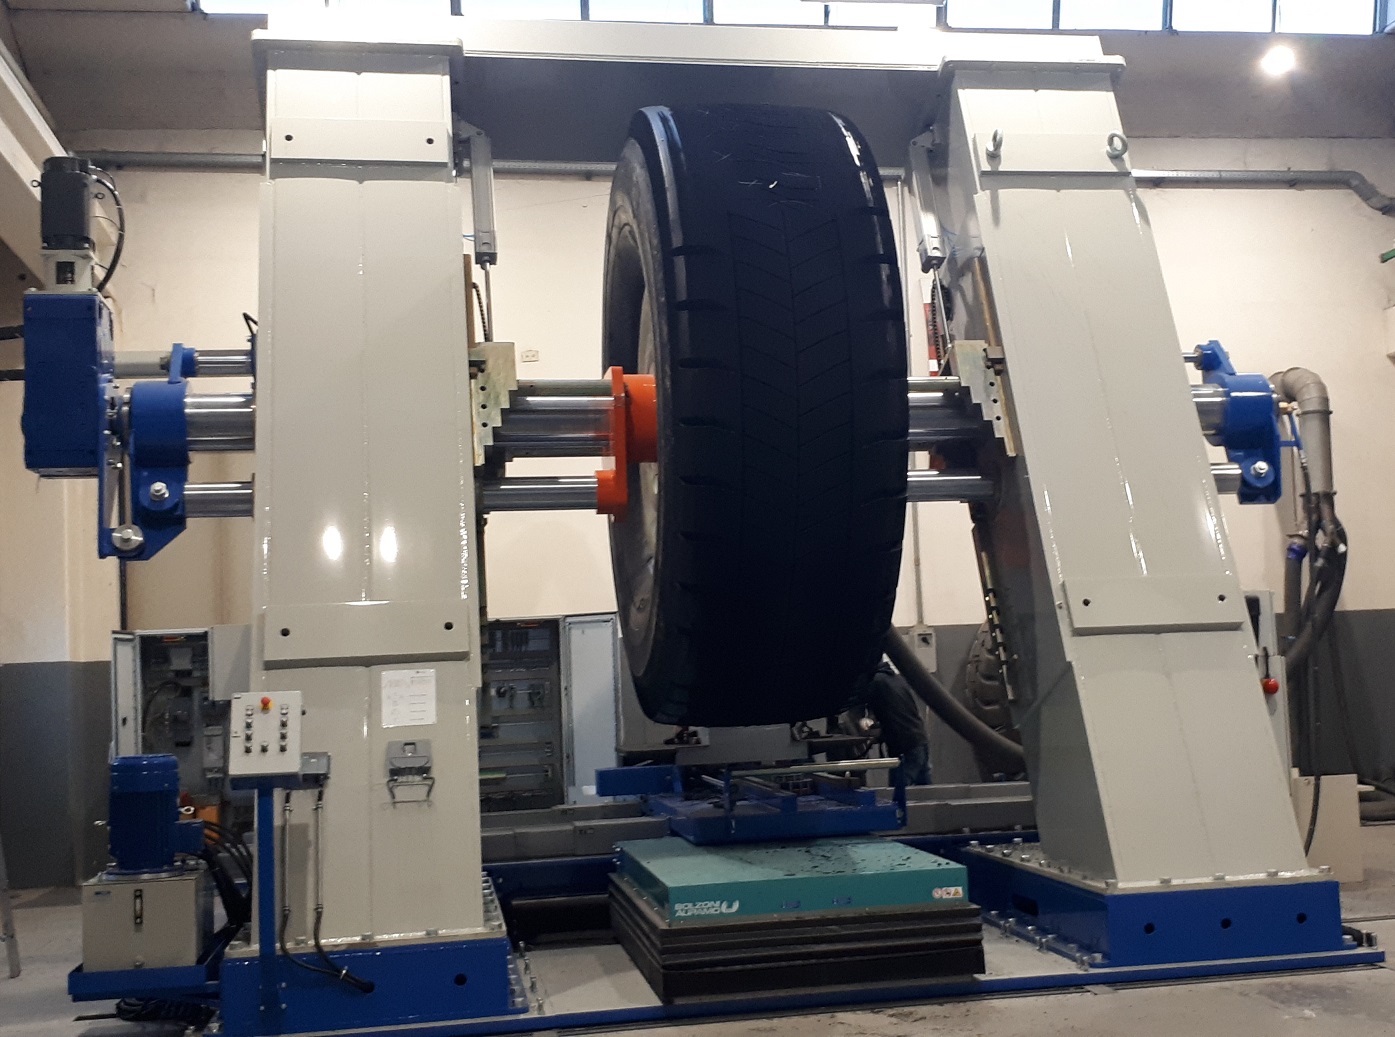 The new machine will operate at Renova's retreading plant in Peru